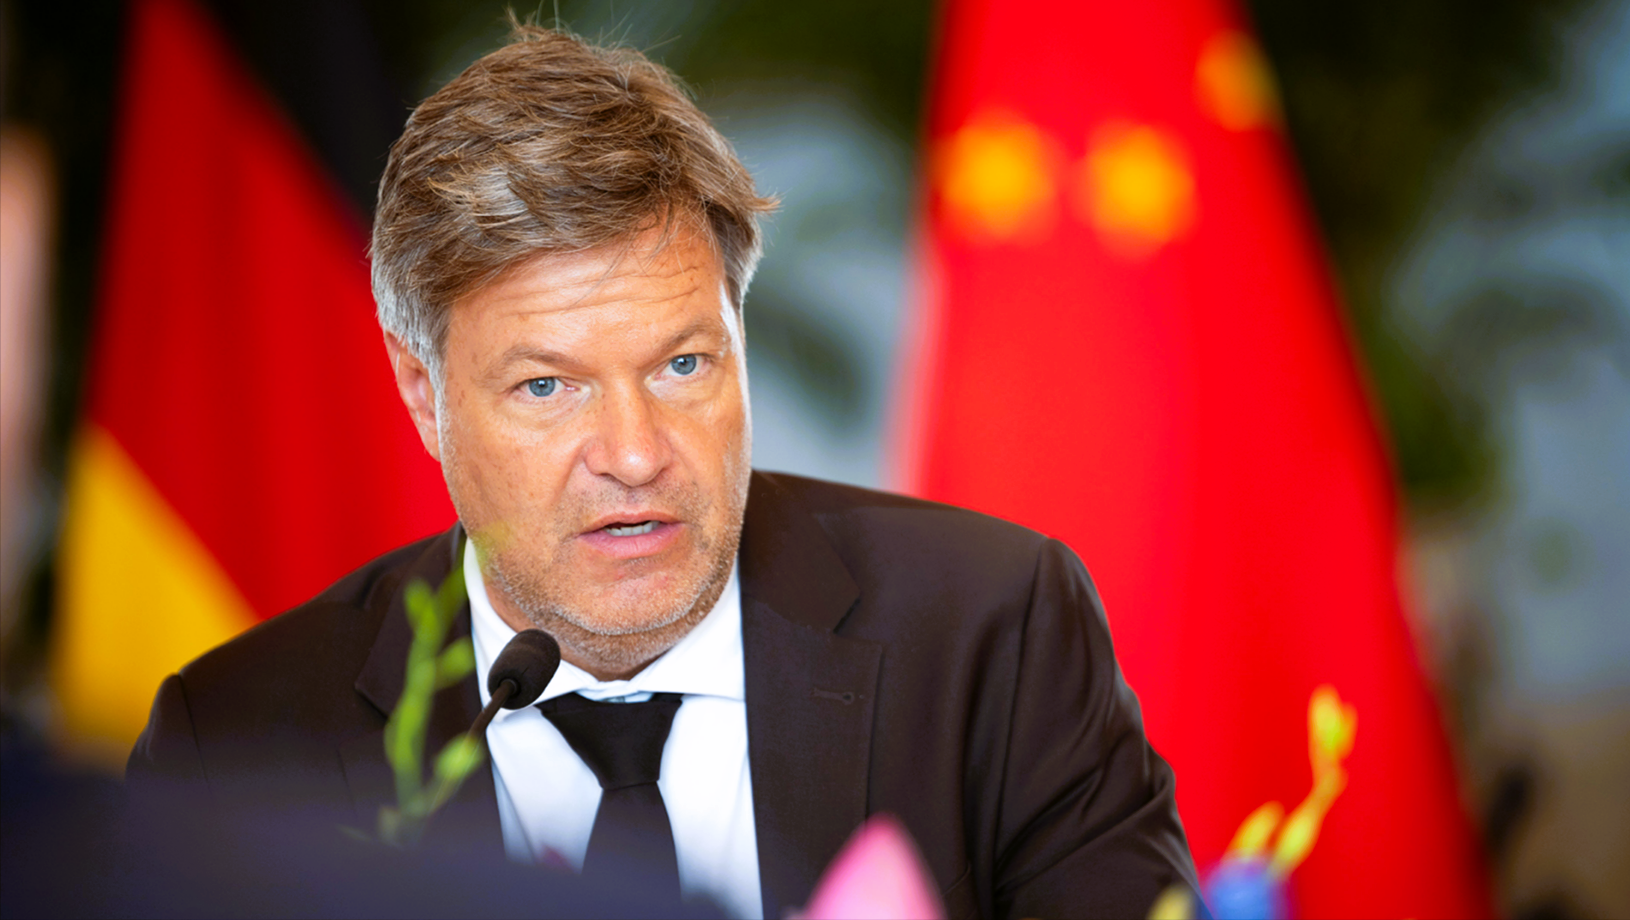 Mutiger Robert Habeck stellt sich gegen China! Klare Kritik bei China-Besuch von Robert Habeck - Wirtschaftsminister erzielt kleinen Erfolg